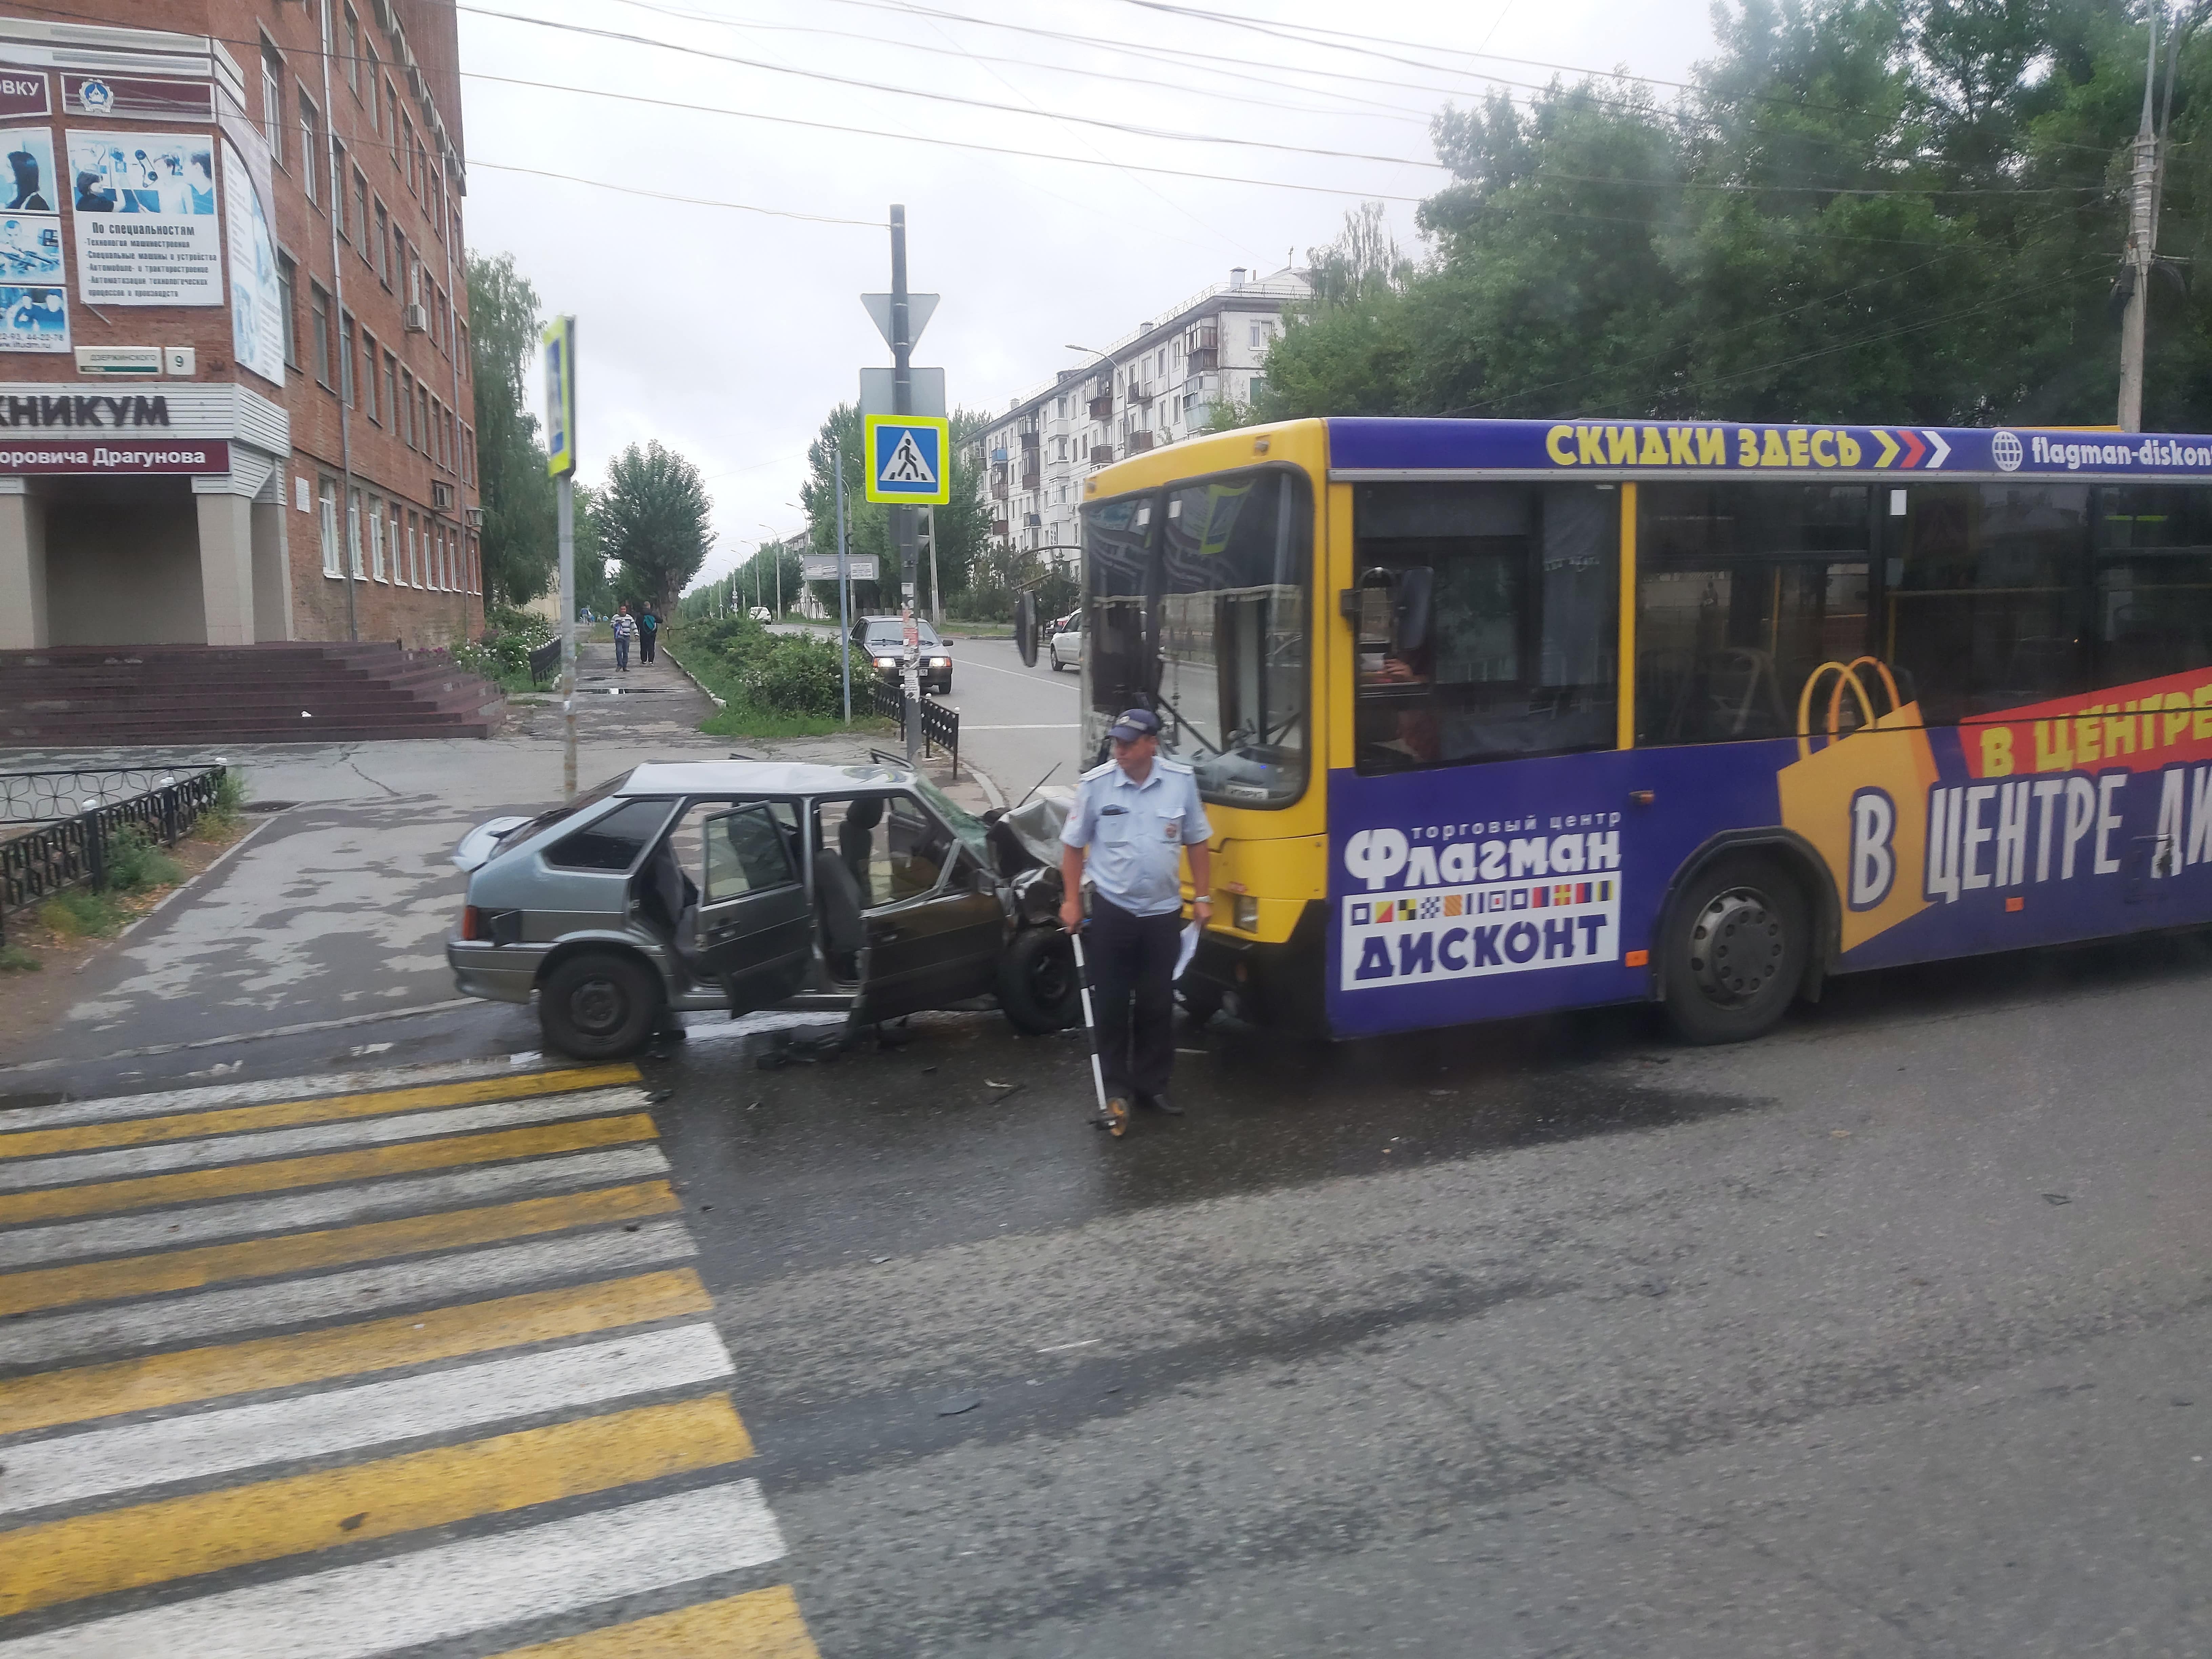 

Автобус и легковушка столкнулись на улице Дзержинского в Ижевске

